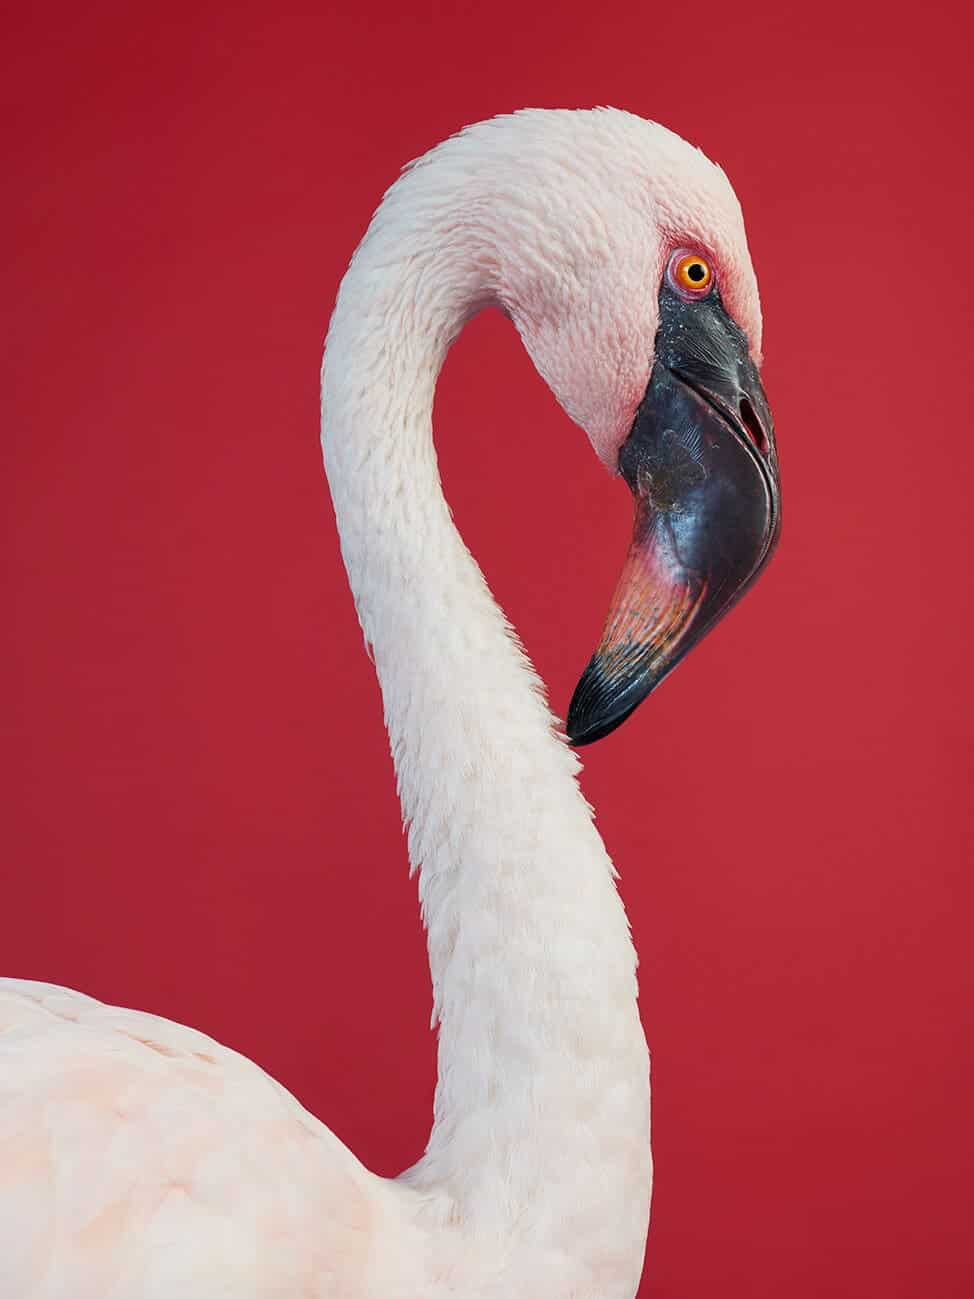 AURA-Flamingo-Jasper-Abels